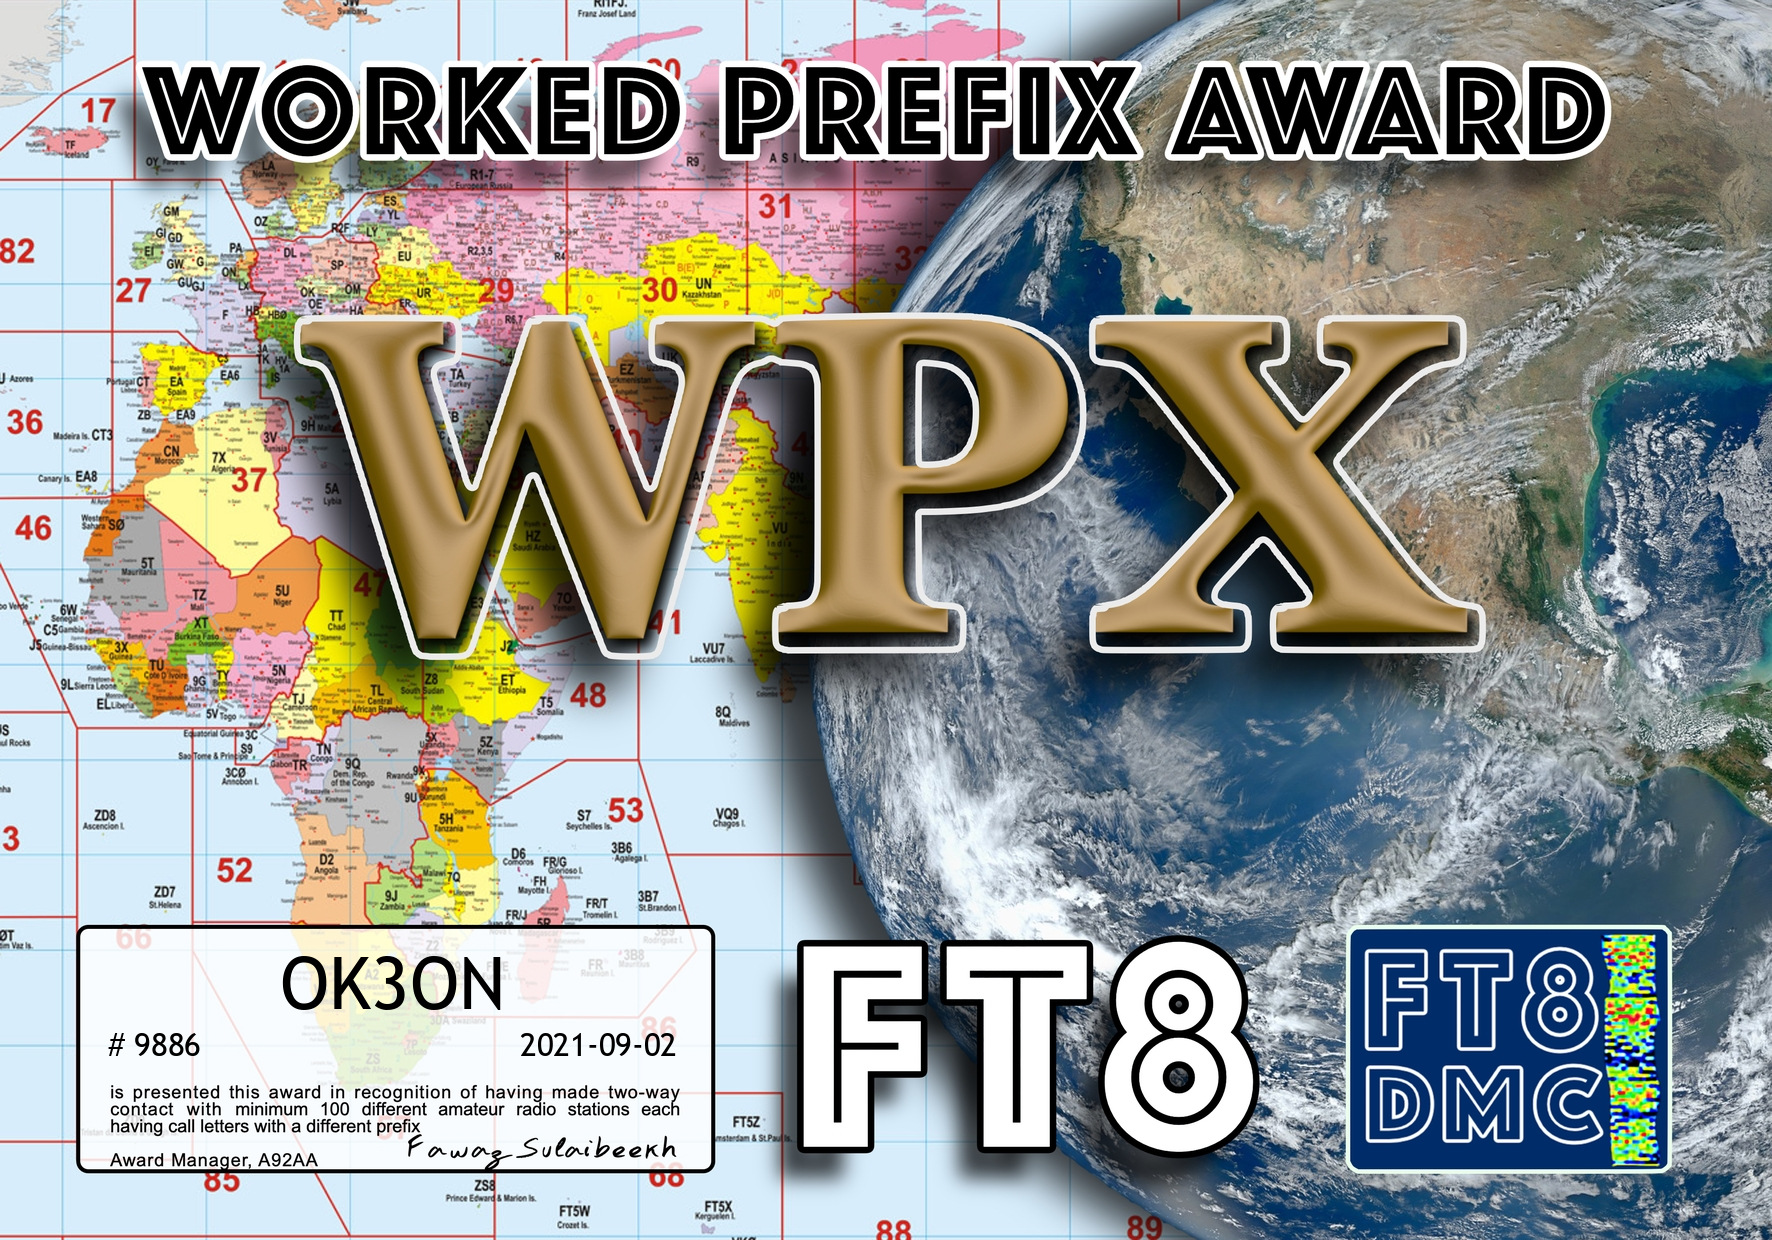 awards/OK3ON-WPX-100_FT8DMC.jpg